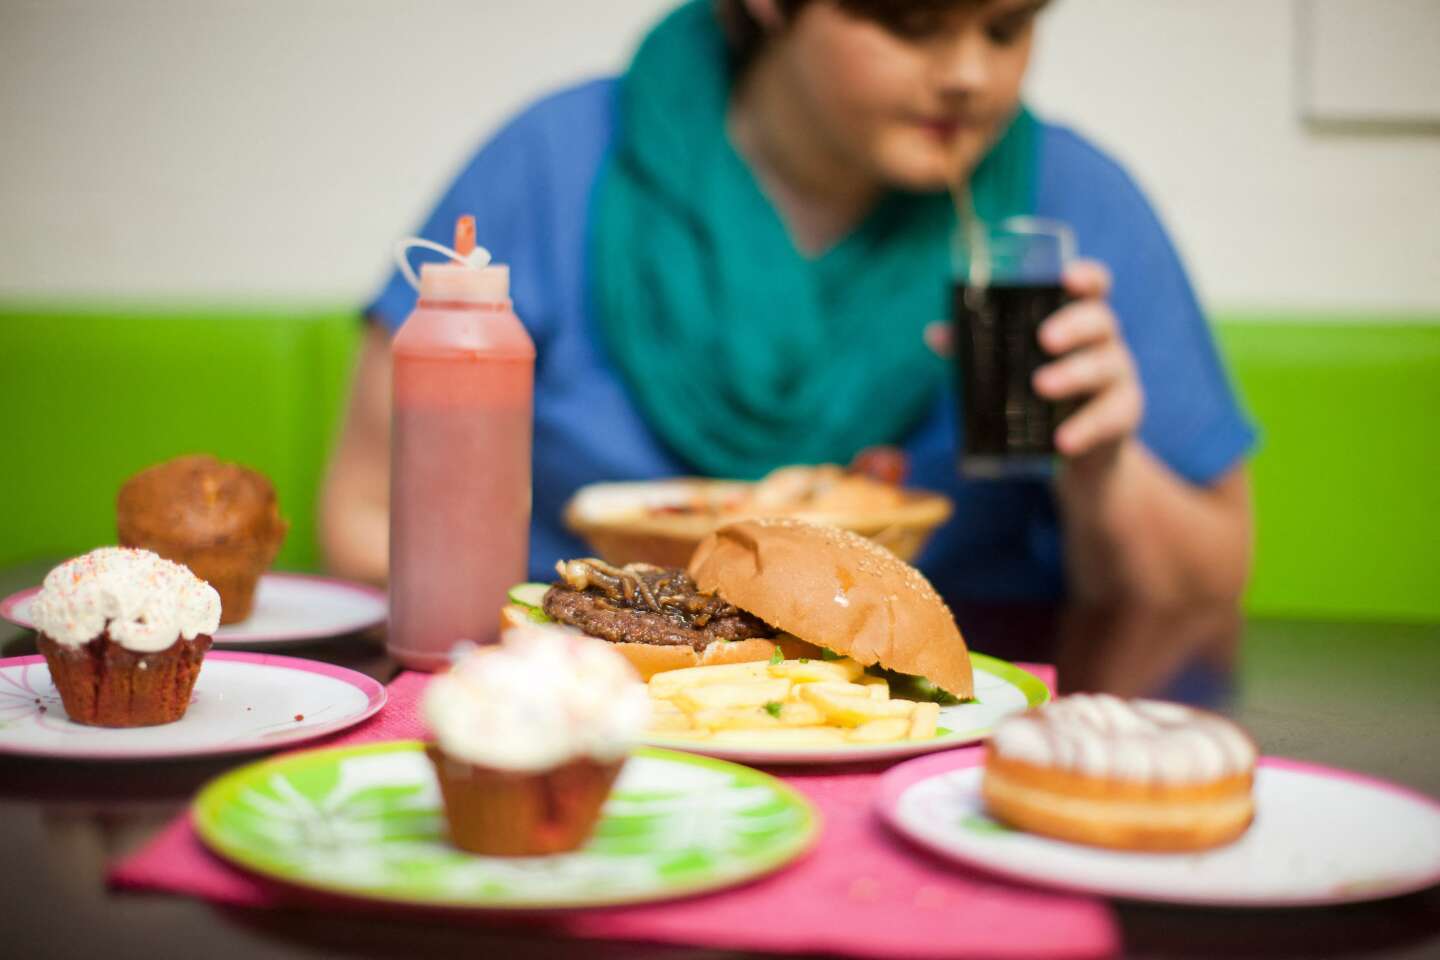 “El tratamiento público de la obesidad debe dirigirse a la industria alimentaria”